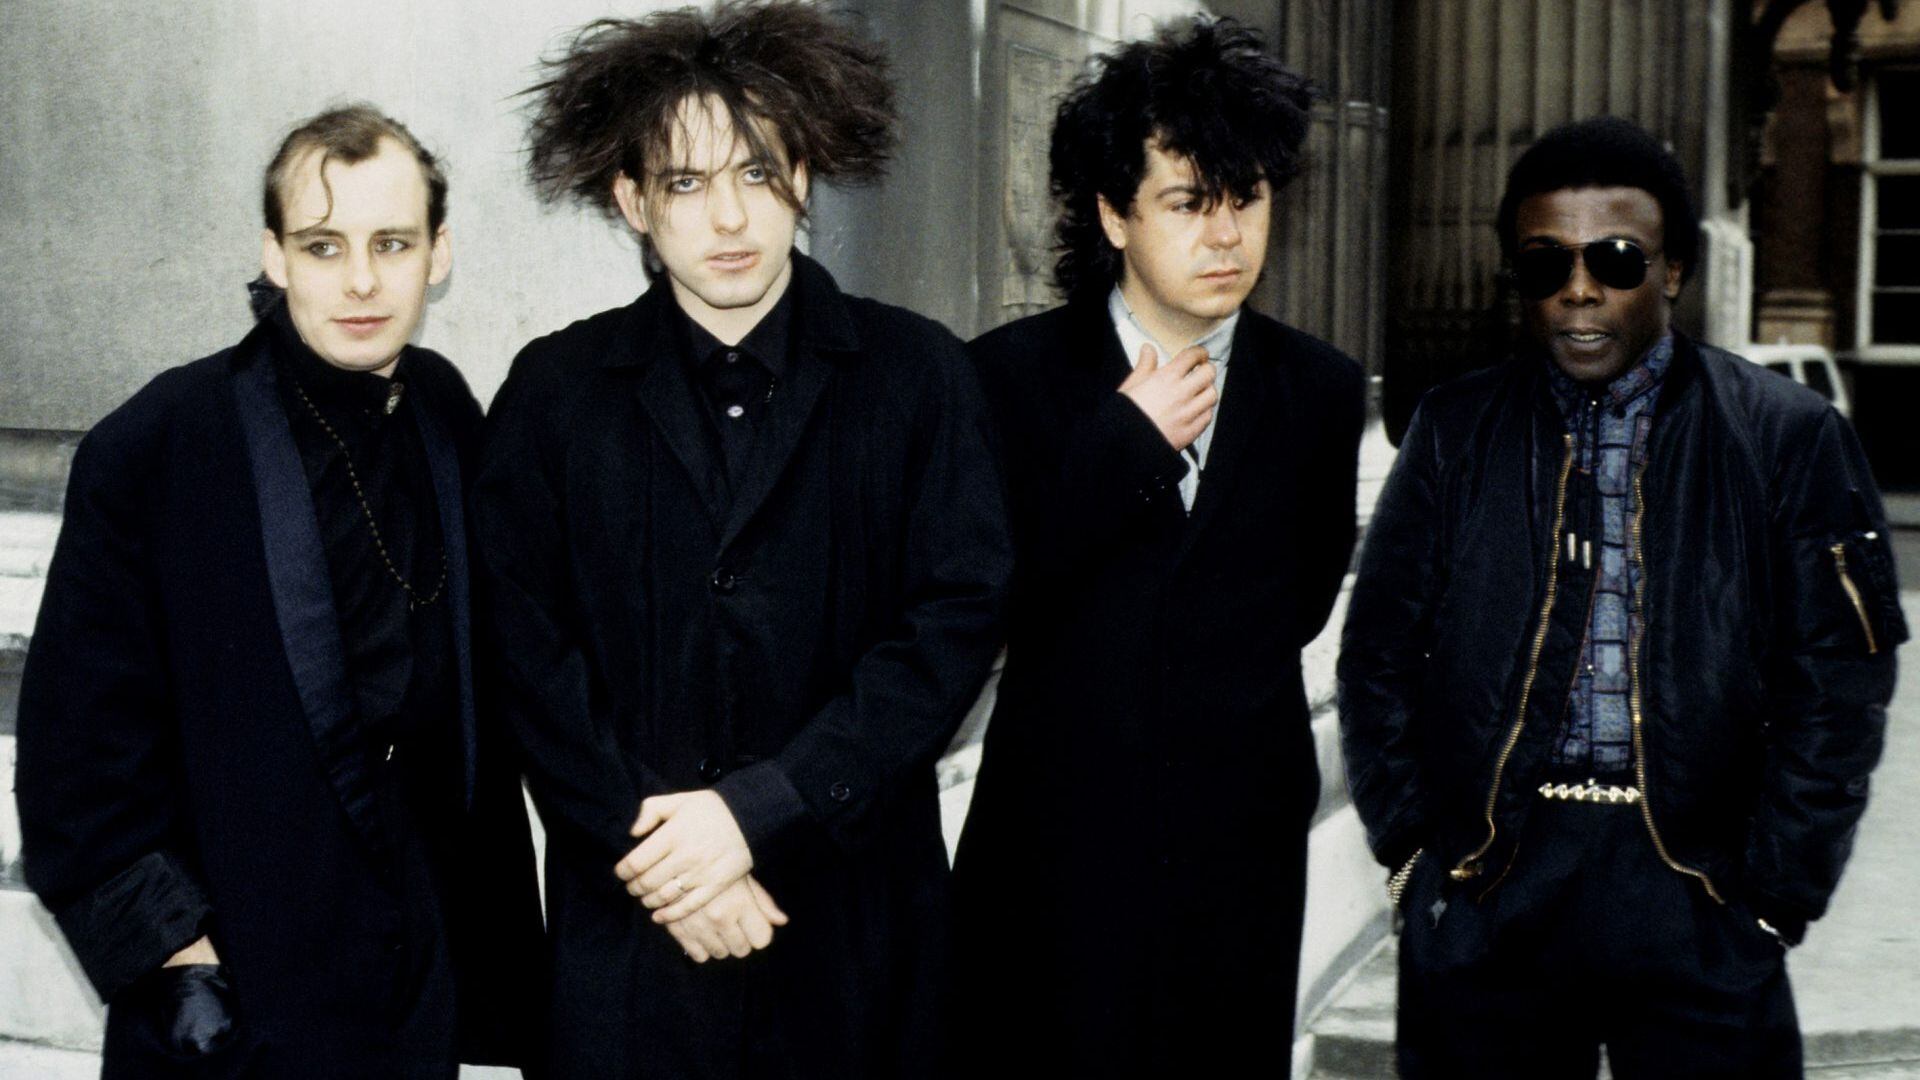 The Cure, la gran banda británica de rock dark, aún en actividad y con gran popularidad global